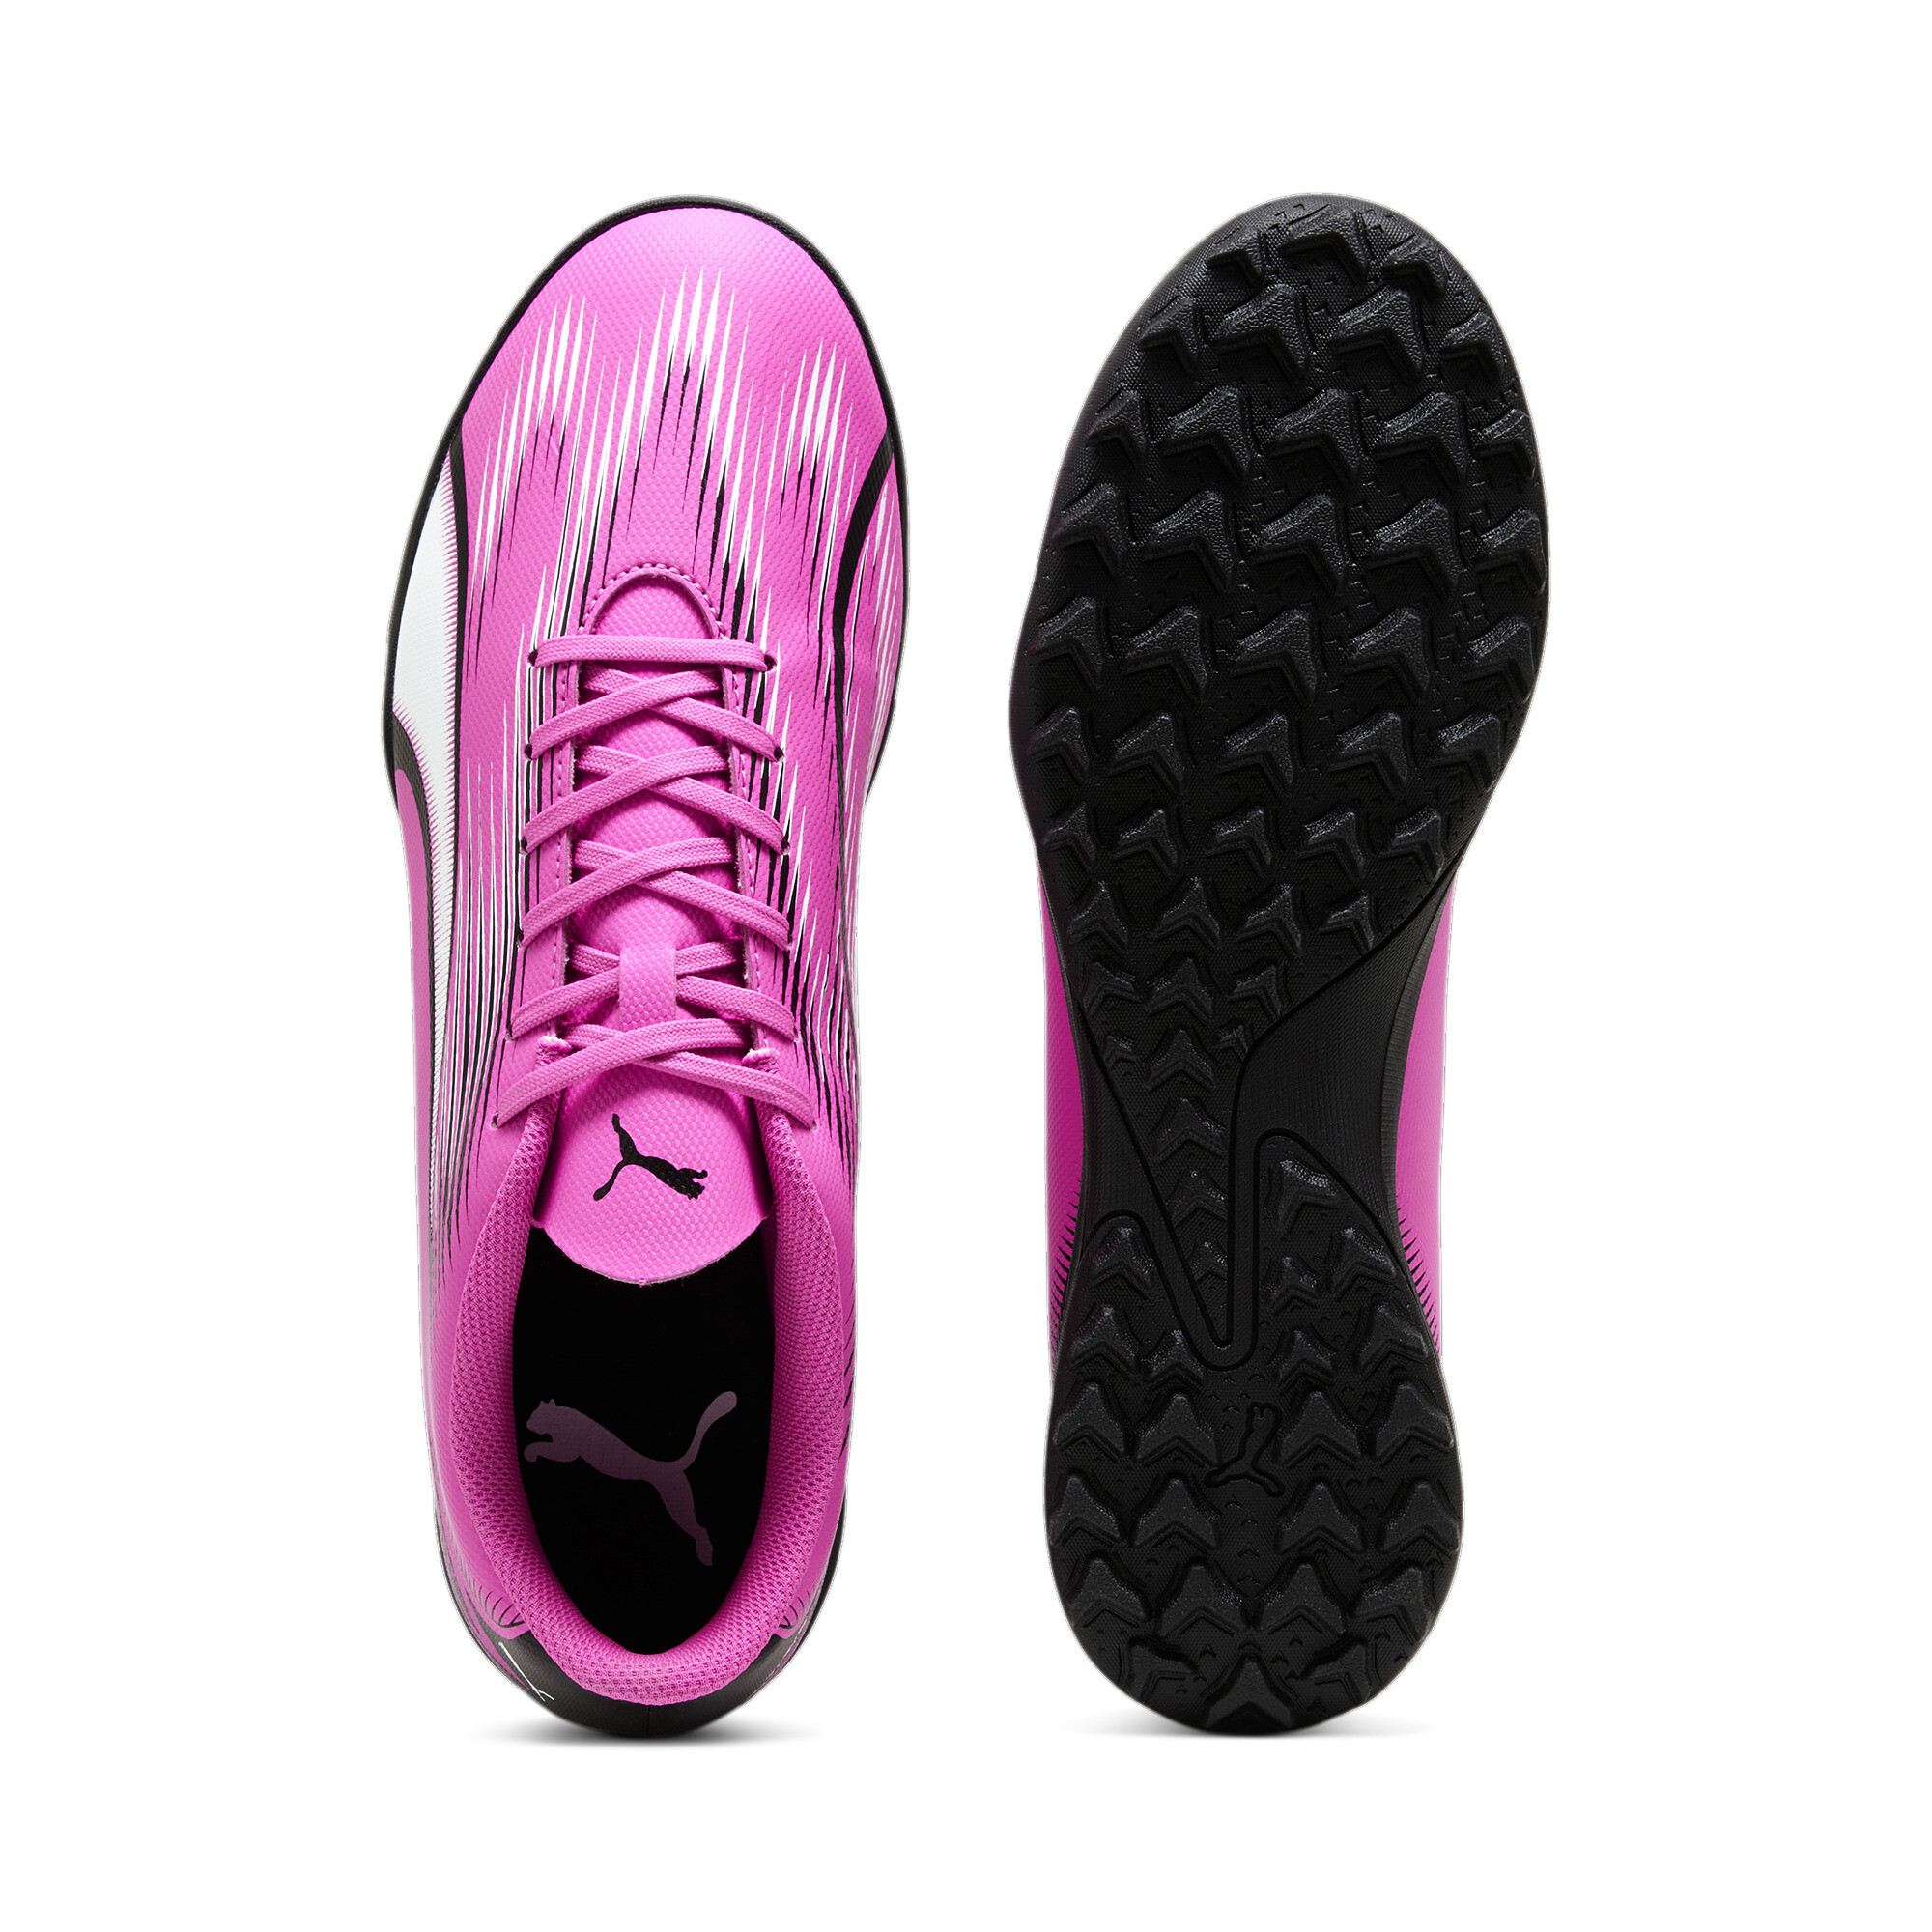 Men's PUMA ULTRA PLAY TT Football Boots In Pink, Size EU 40.5